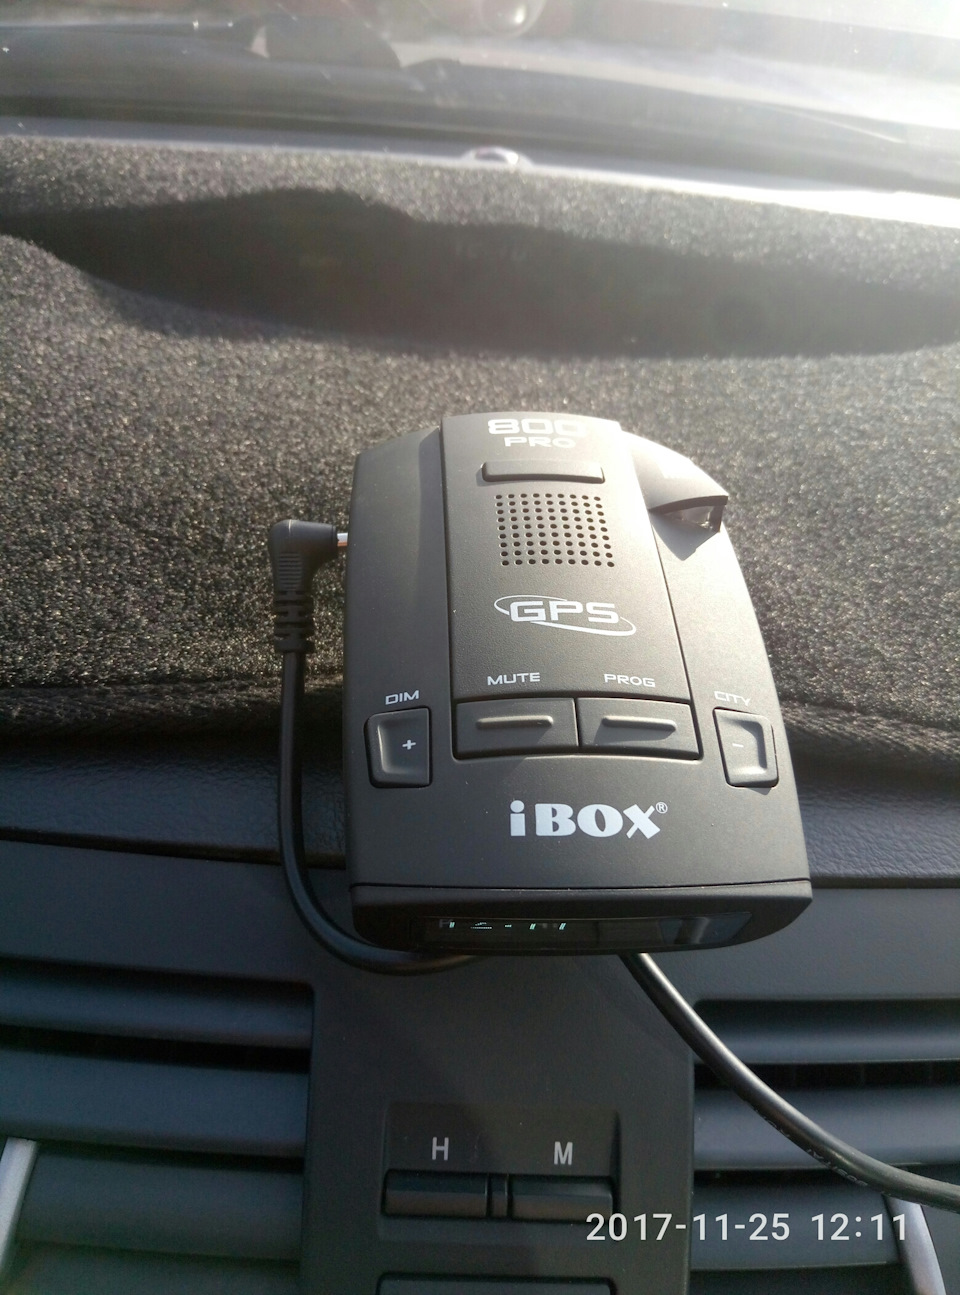 Детектор ibox 800. Радар-детектор IBOX. Антирадар IBOX. Регистратор антирадар айбокс. Антирадар 7800.